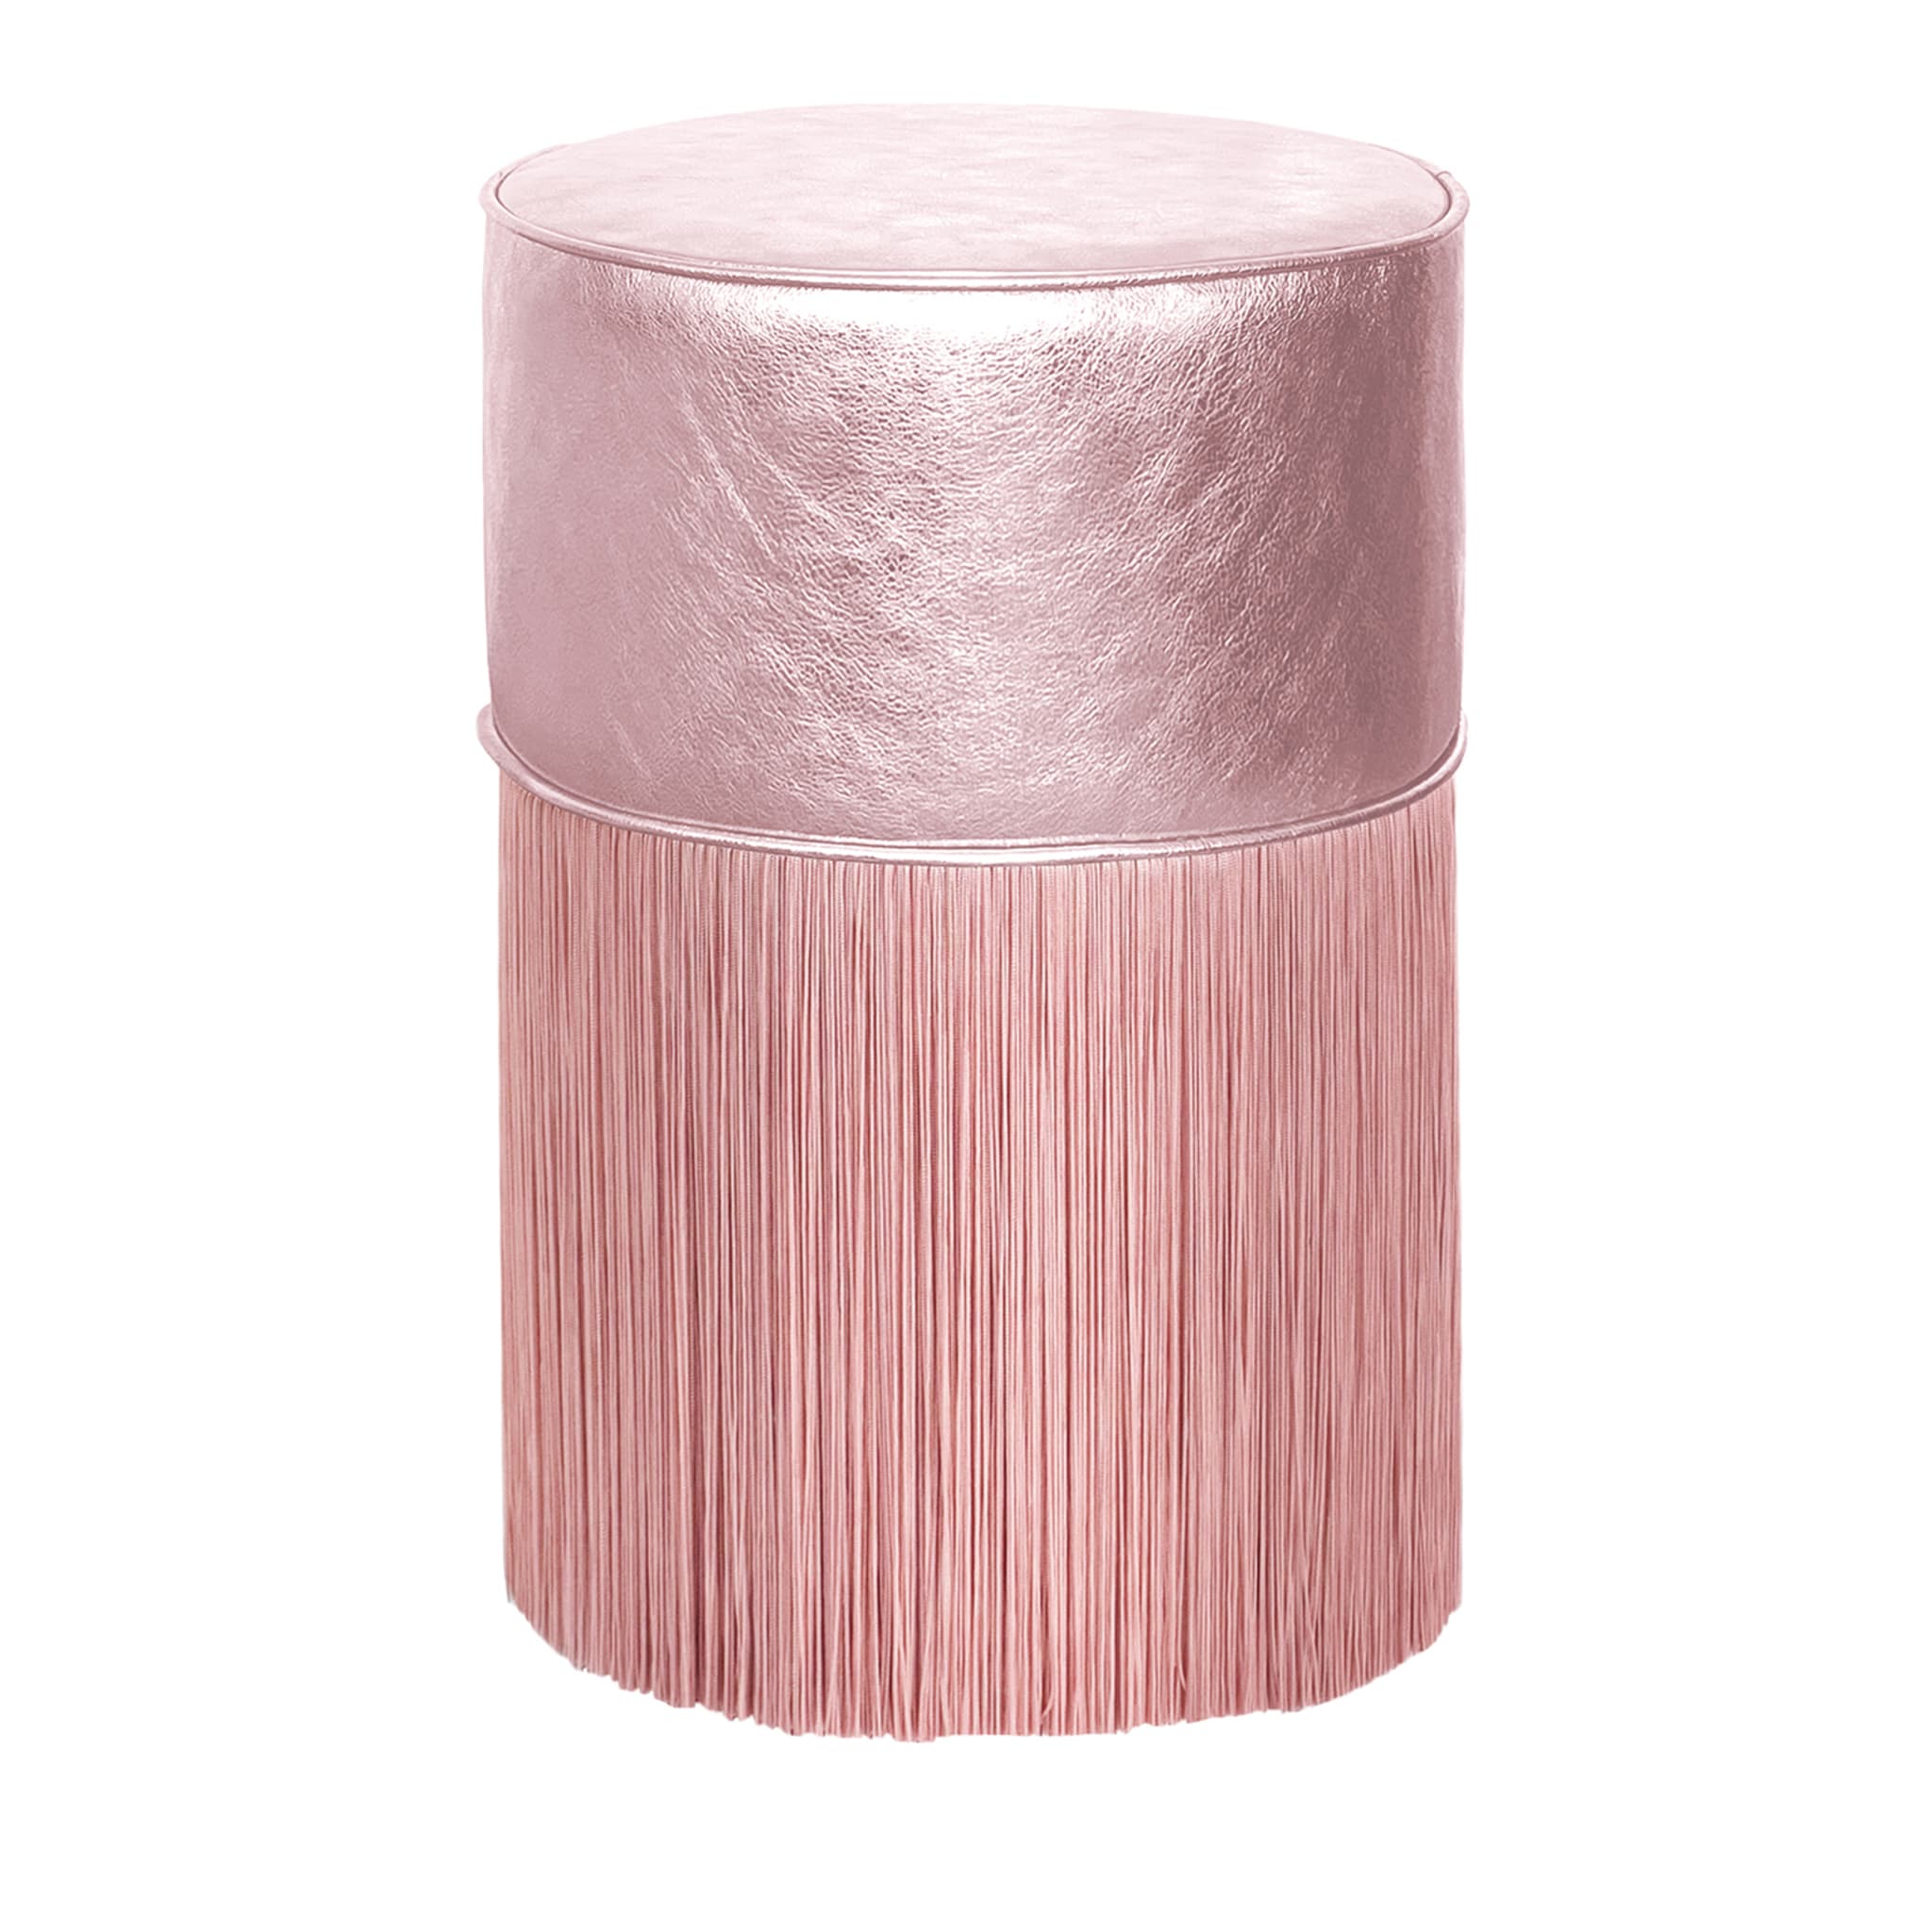 Pouf in pelle metallizzata rosa chiaro di Lorenza Bozzoli - Vista principale